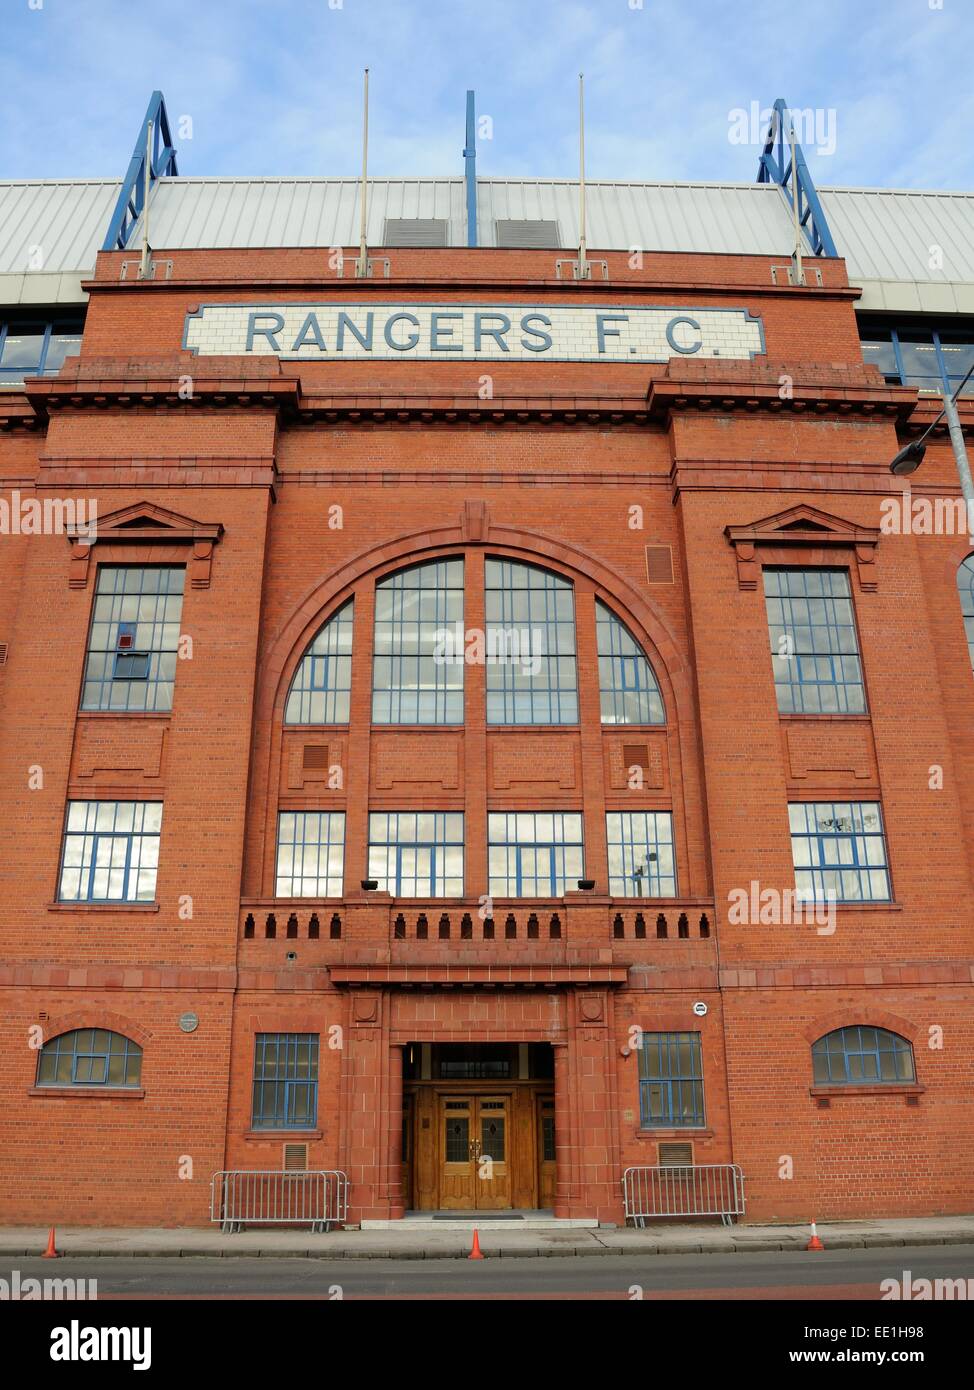 Bâtiment classé et stade de Glasgow Rangers Football Club en Ecosse Banque D'Images